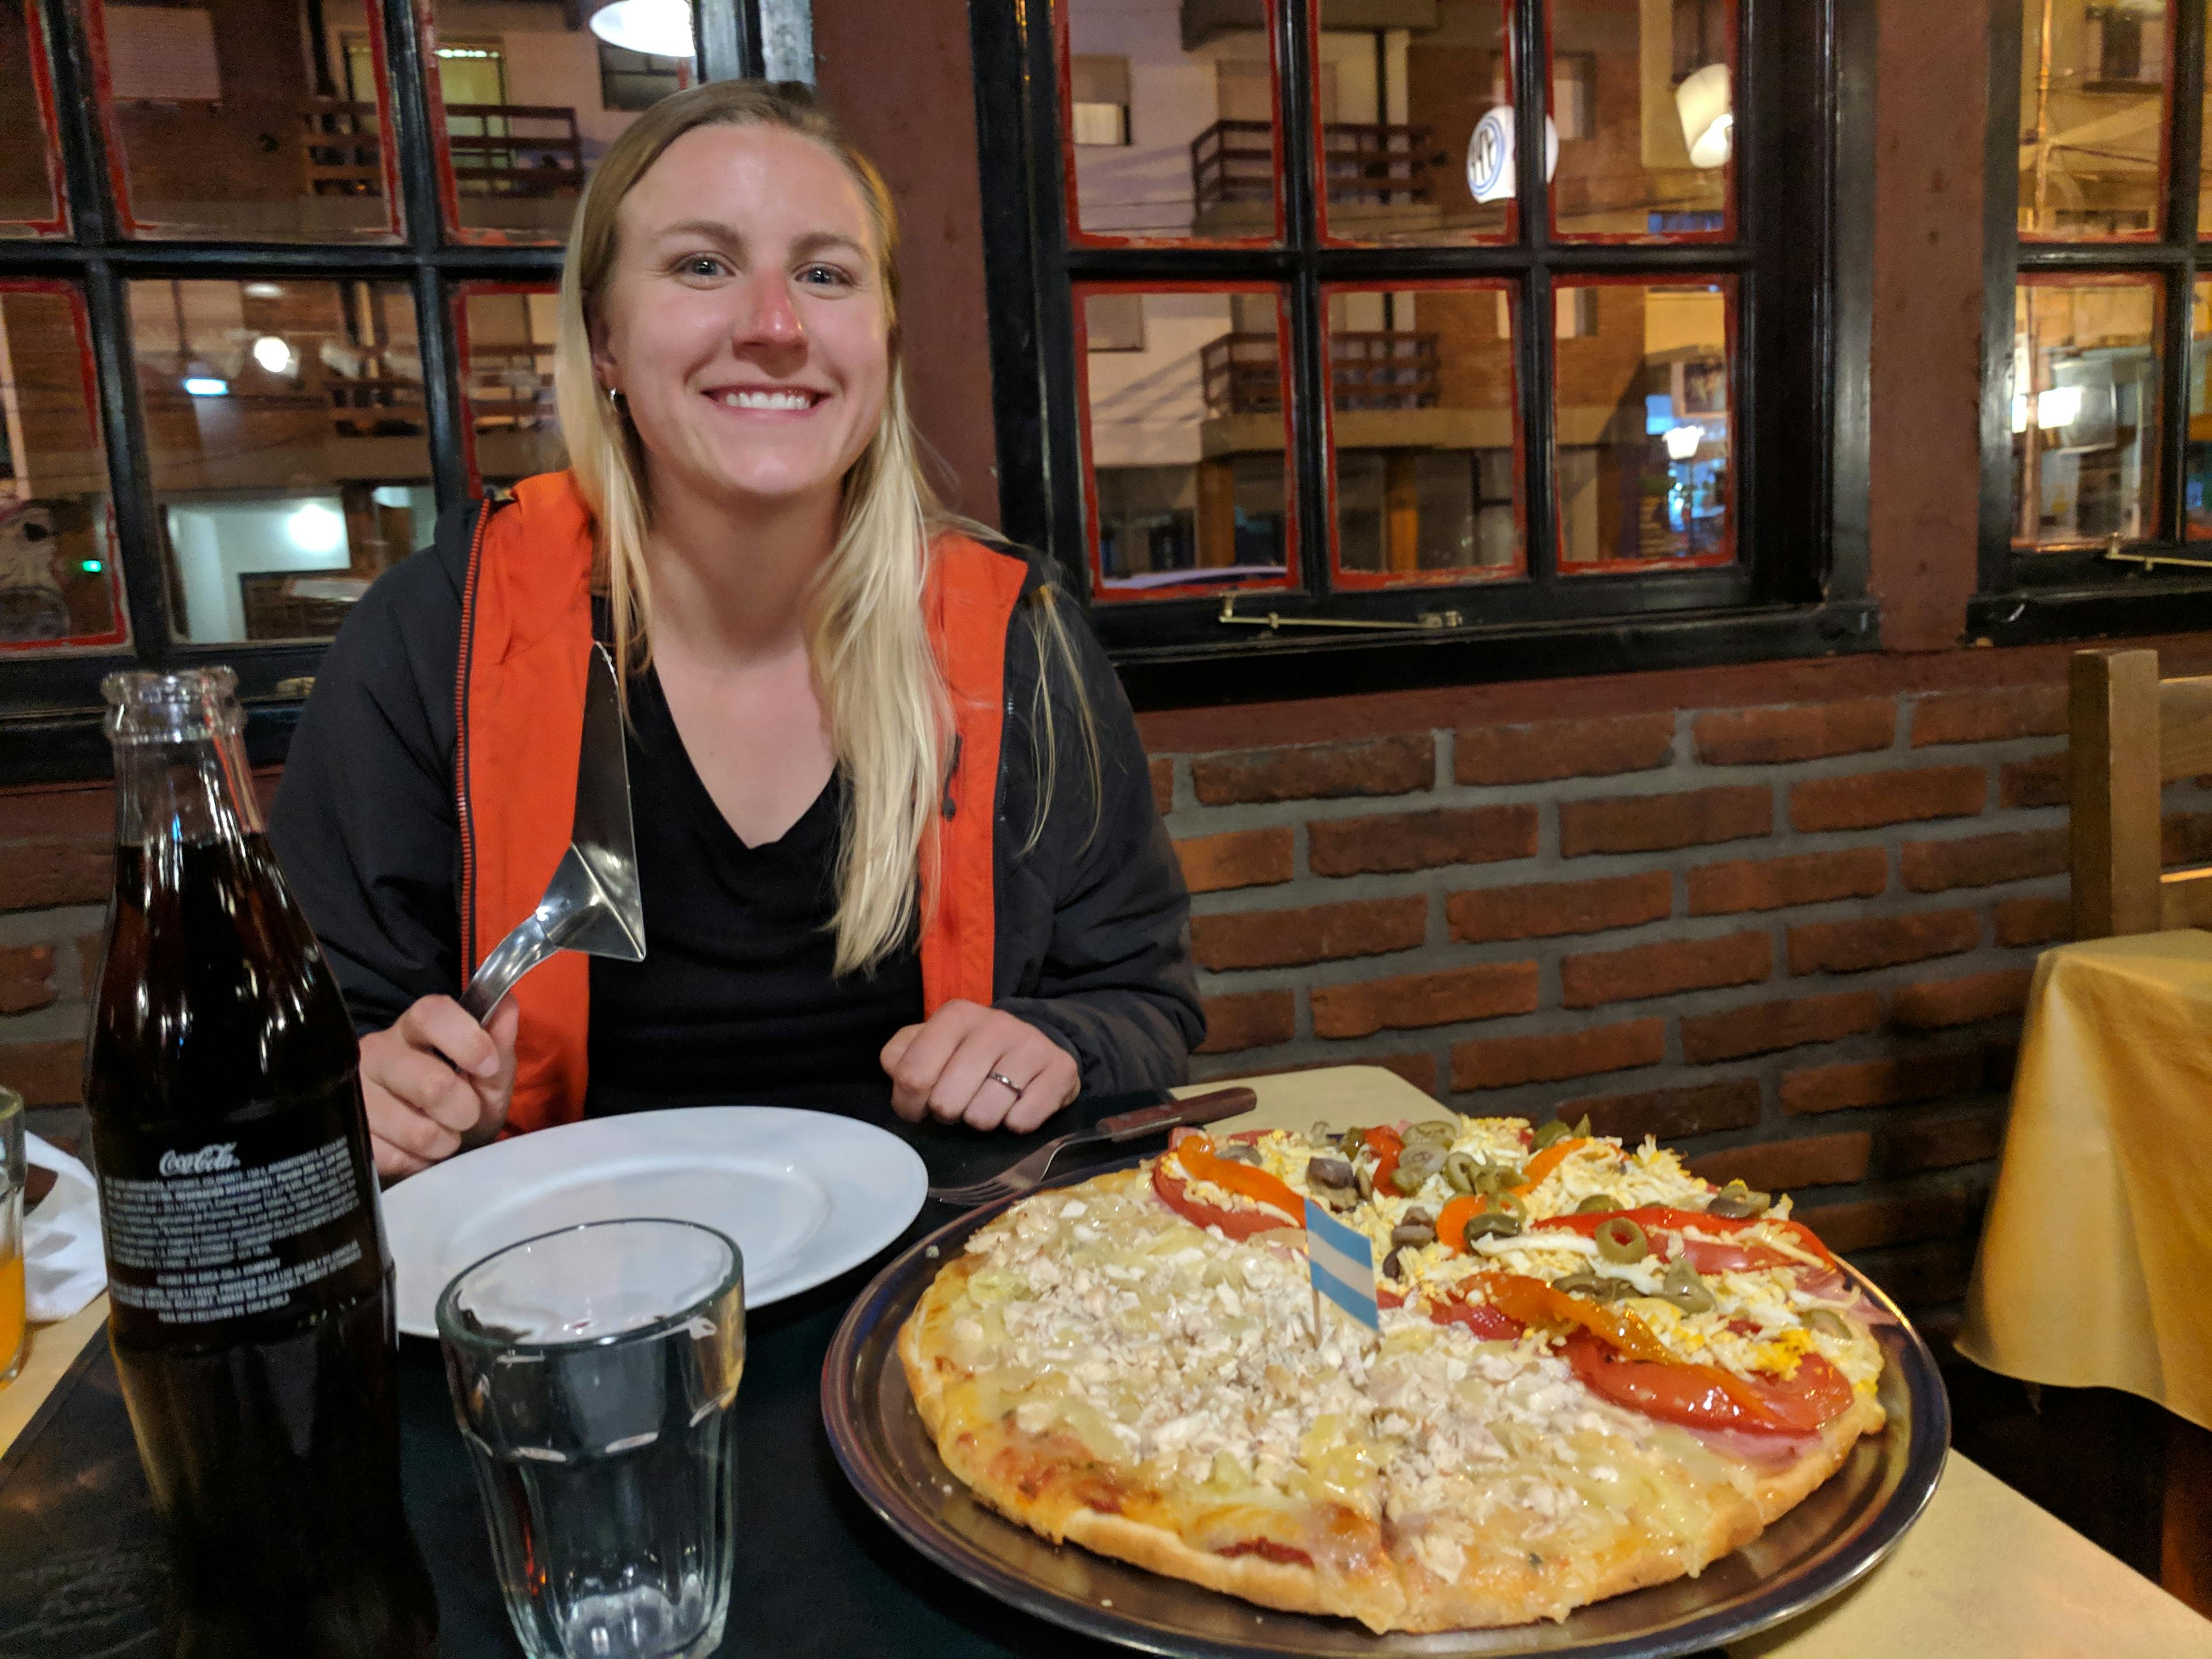 Lauren enjoying pizza at El Mundo Pizzas y Pastas